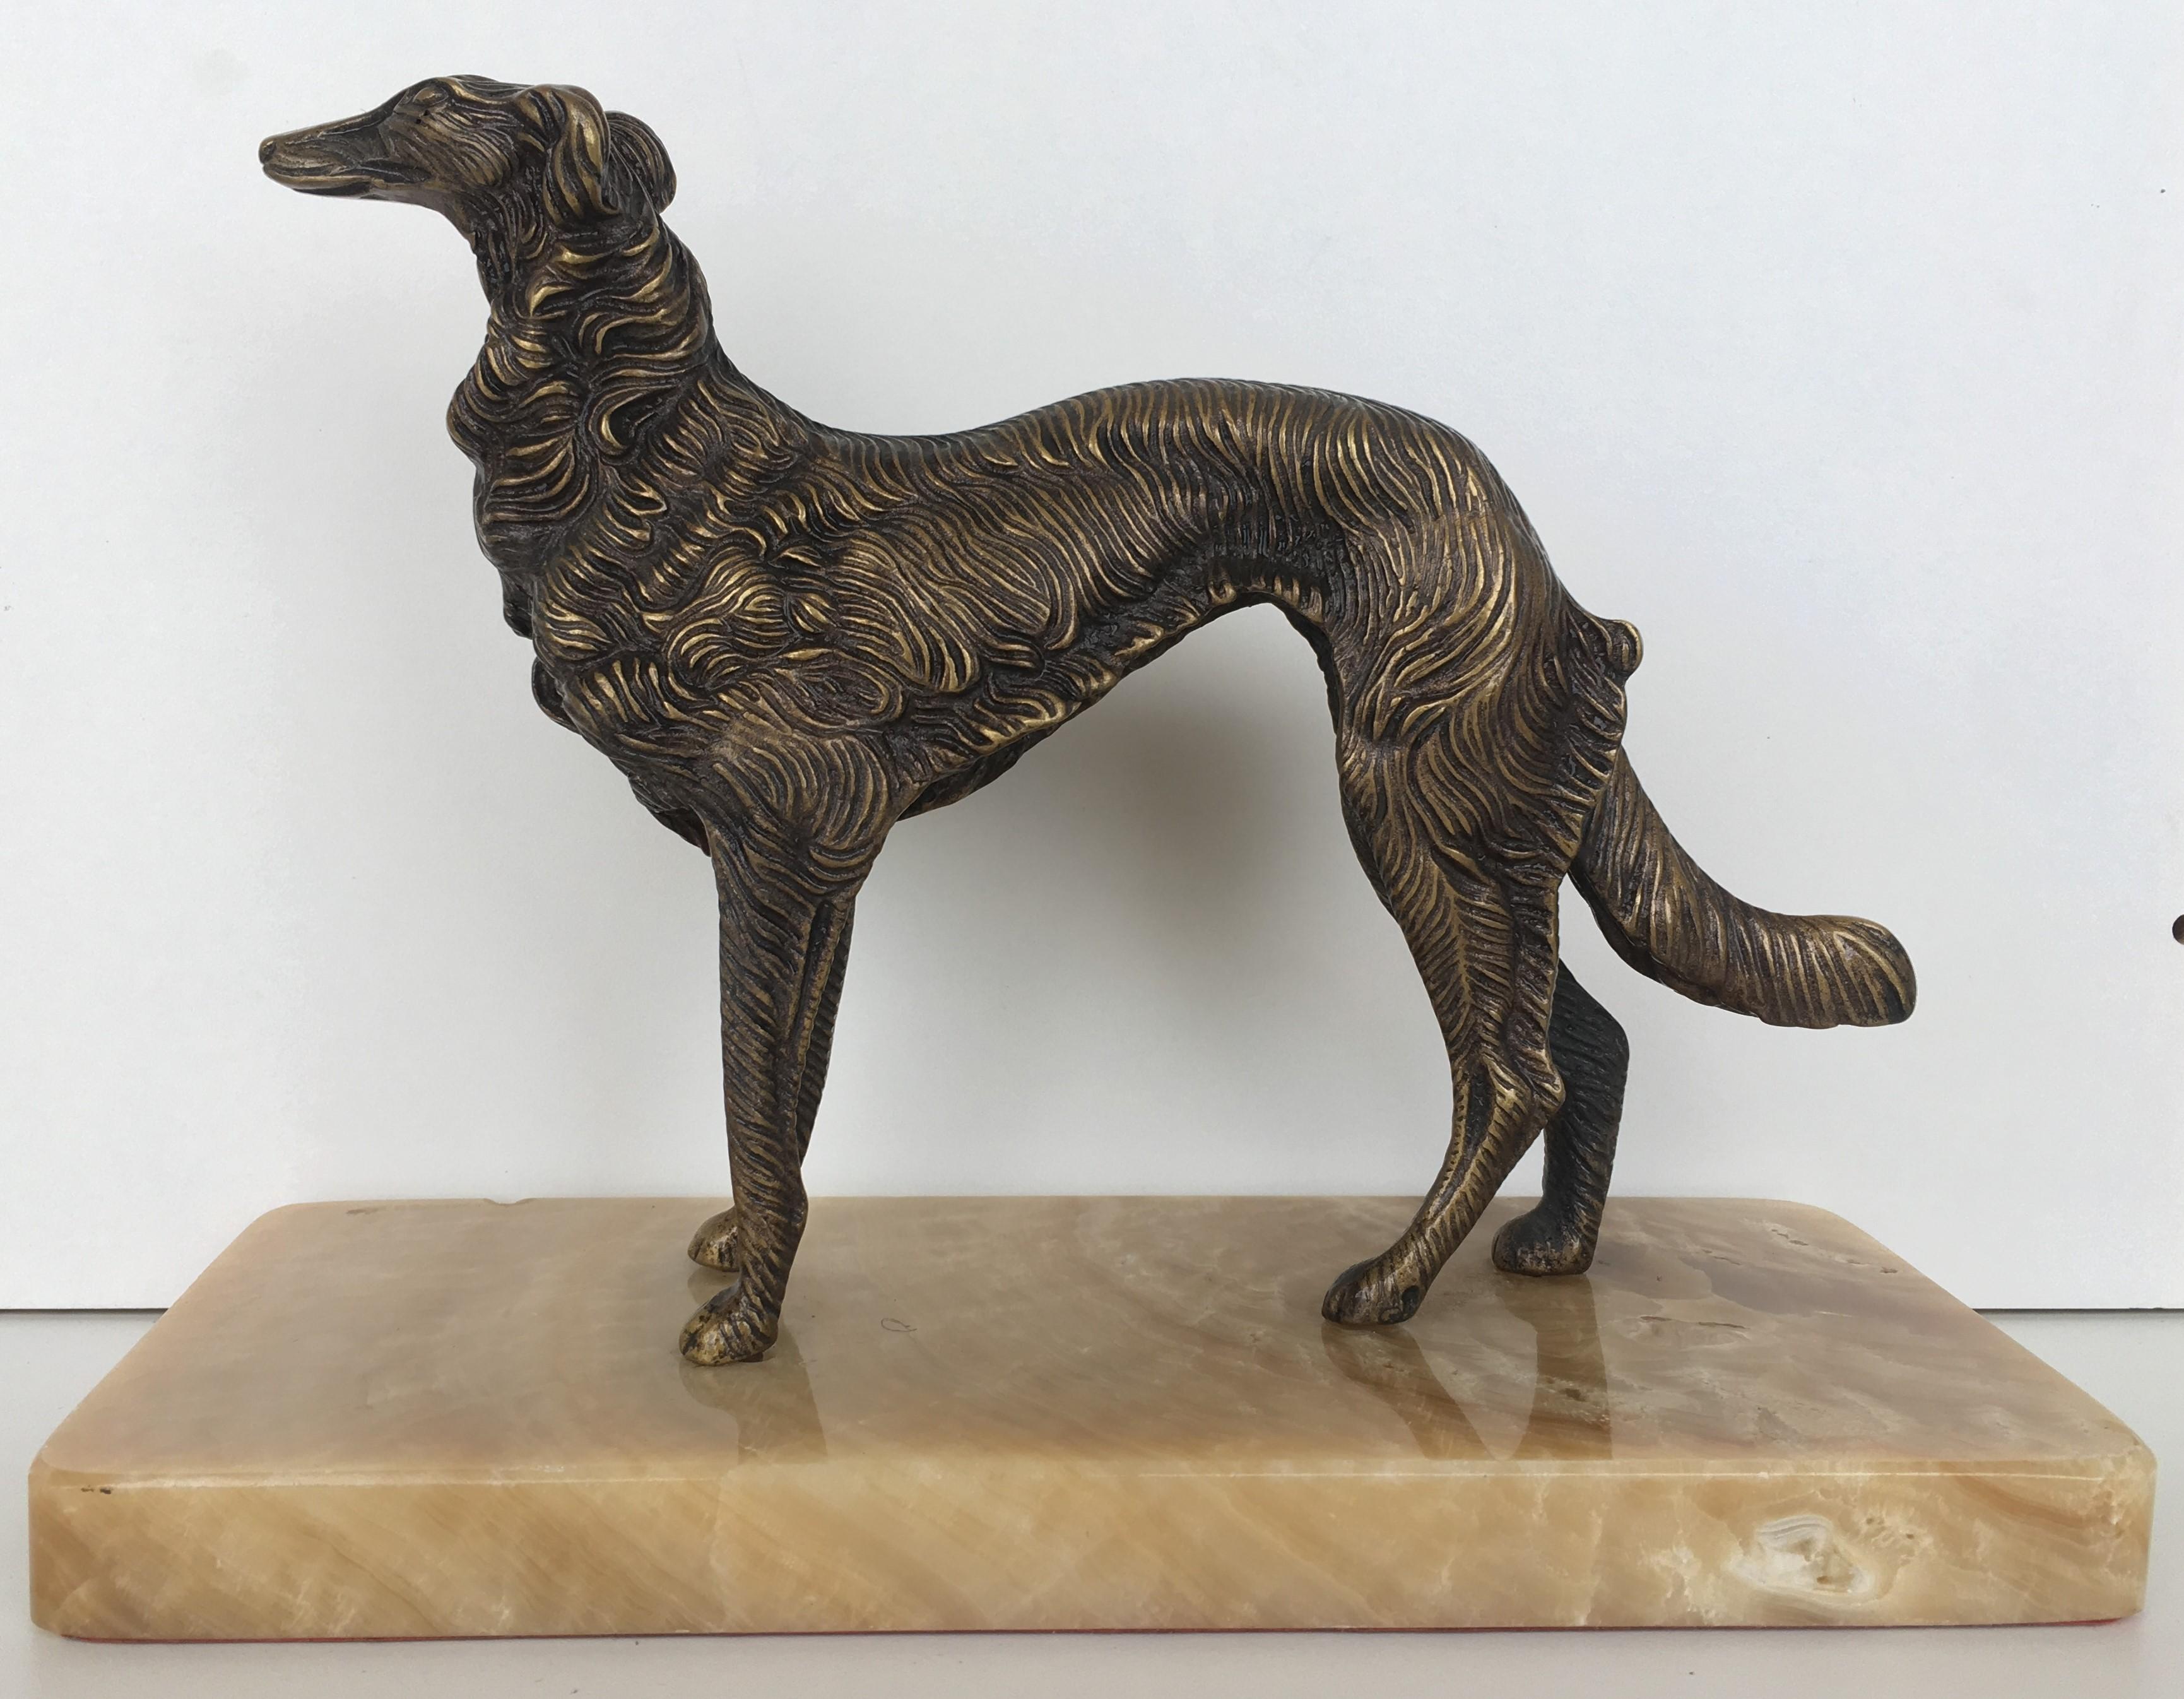 Ein französischer, silbern patinierter Bronze-Borzoi aus dem 19. Jahrhundert auf einem Sockel aus cremefarbenem Marmor. Eine schöne Darstellung dieses schlanken, hübschen Hundes. In sehr gutem Zustand mit leichten Abnutzungserscheinungen an der